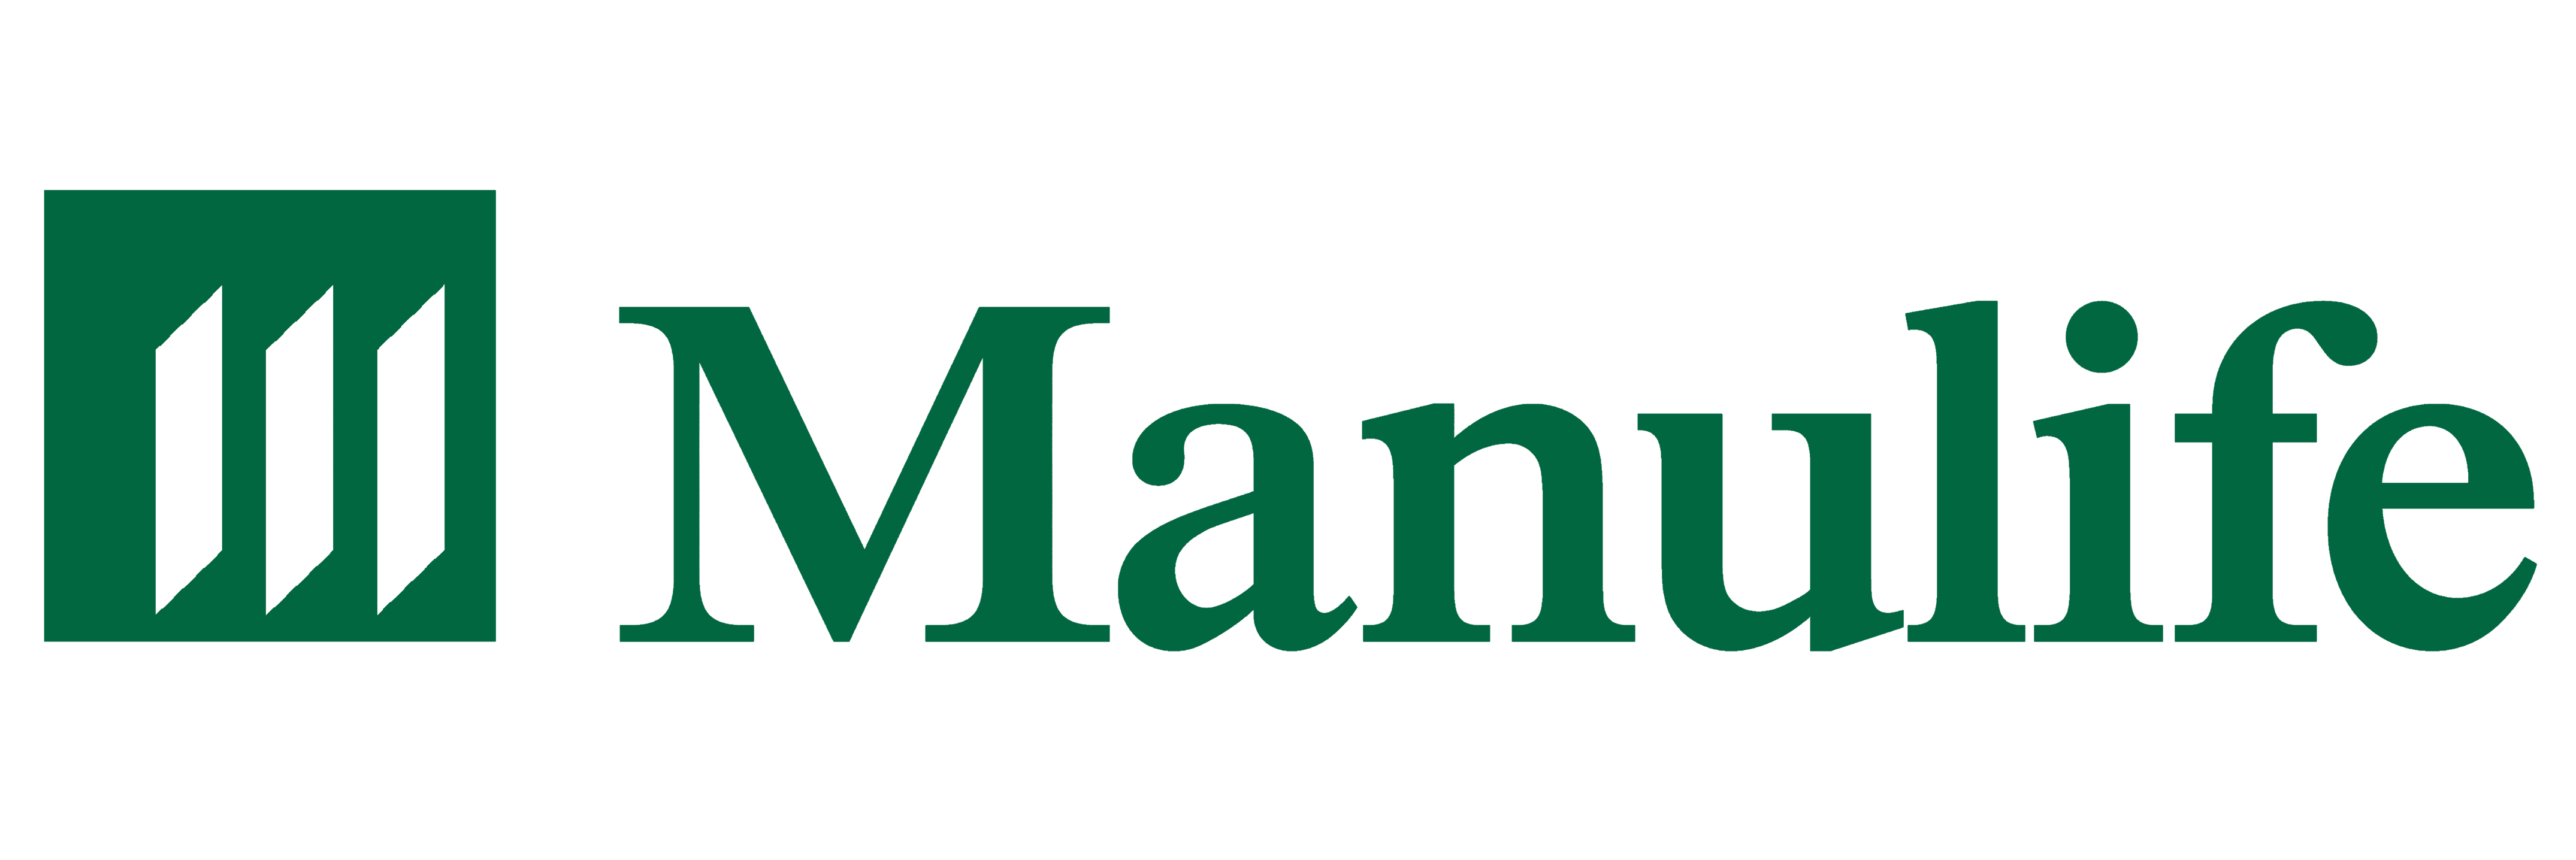 Manulife logo, logotype